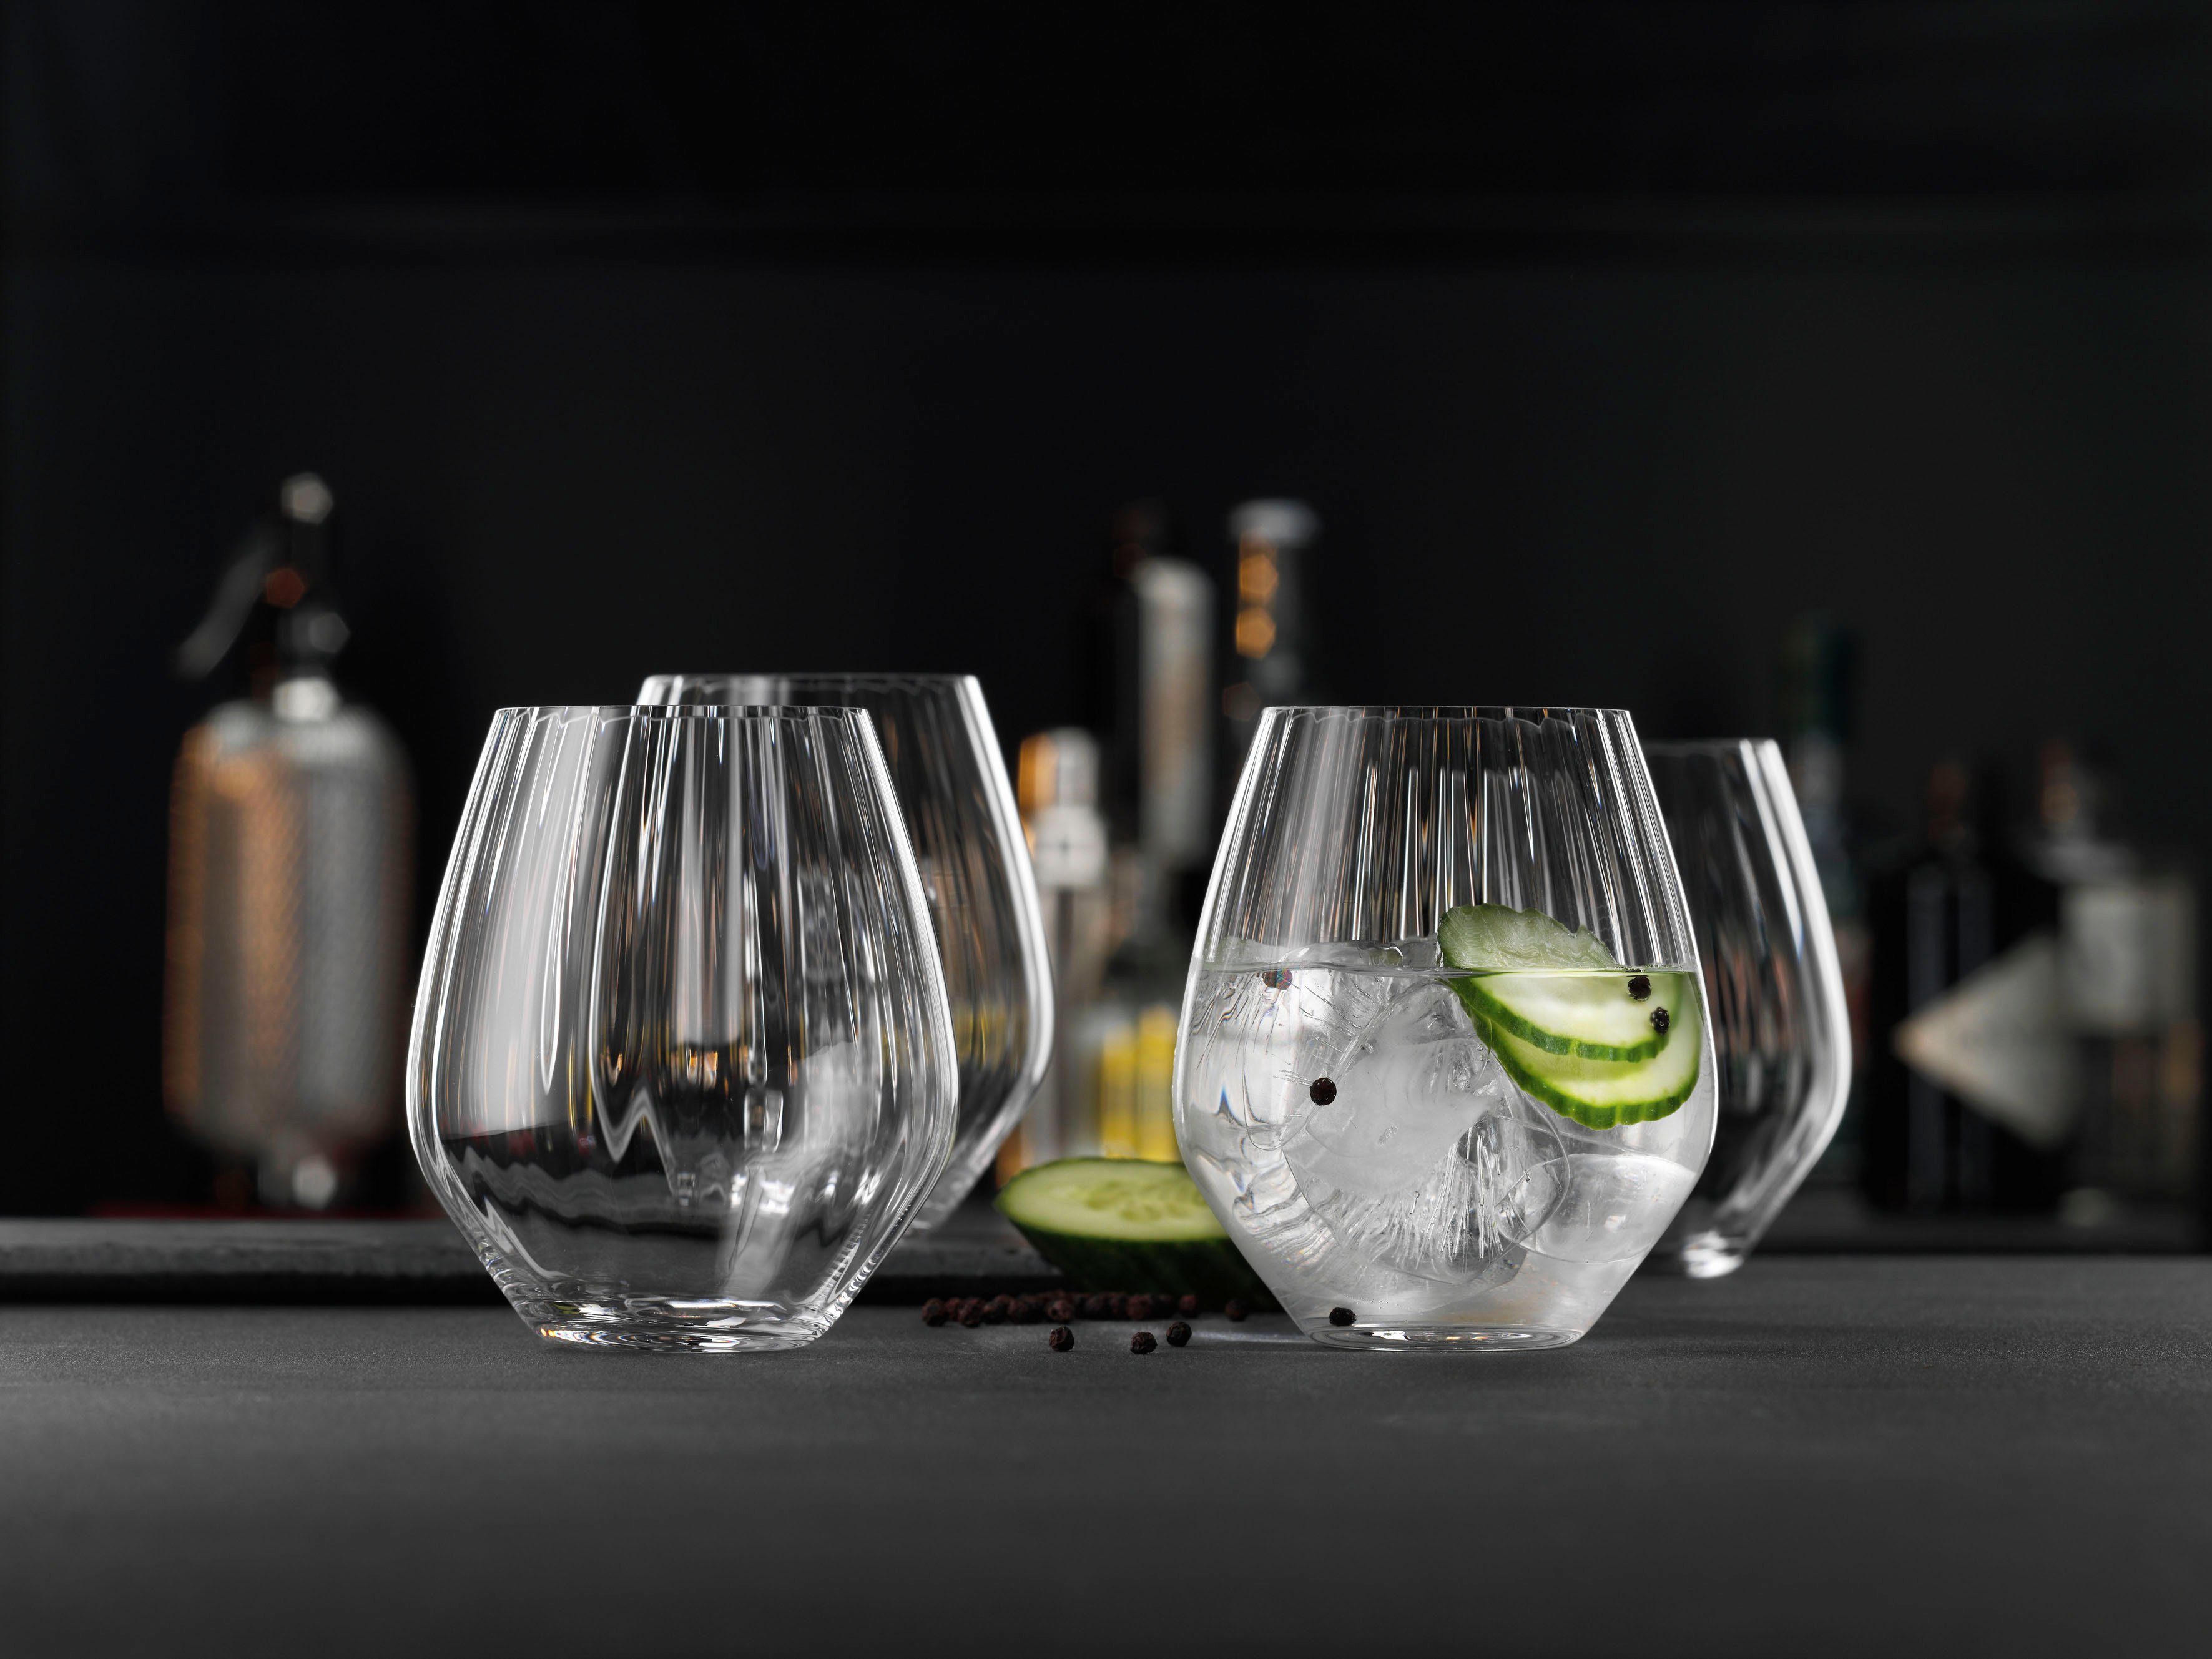 SPIEGELAU Cocktailglas 4-teilig ml, Kristallglas, Glasses, Special 625